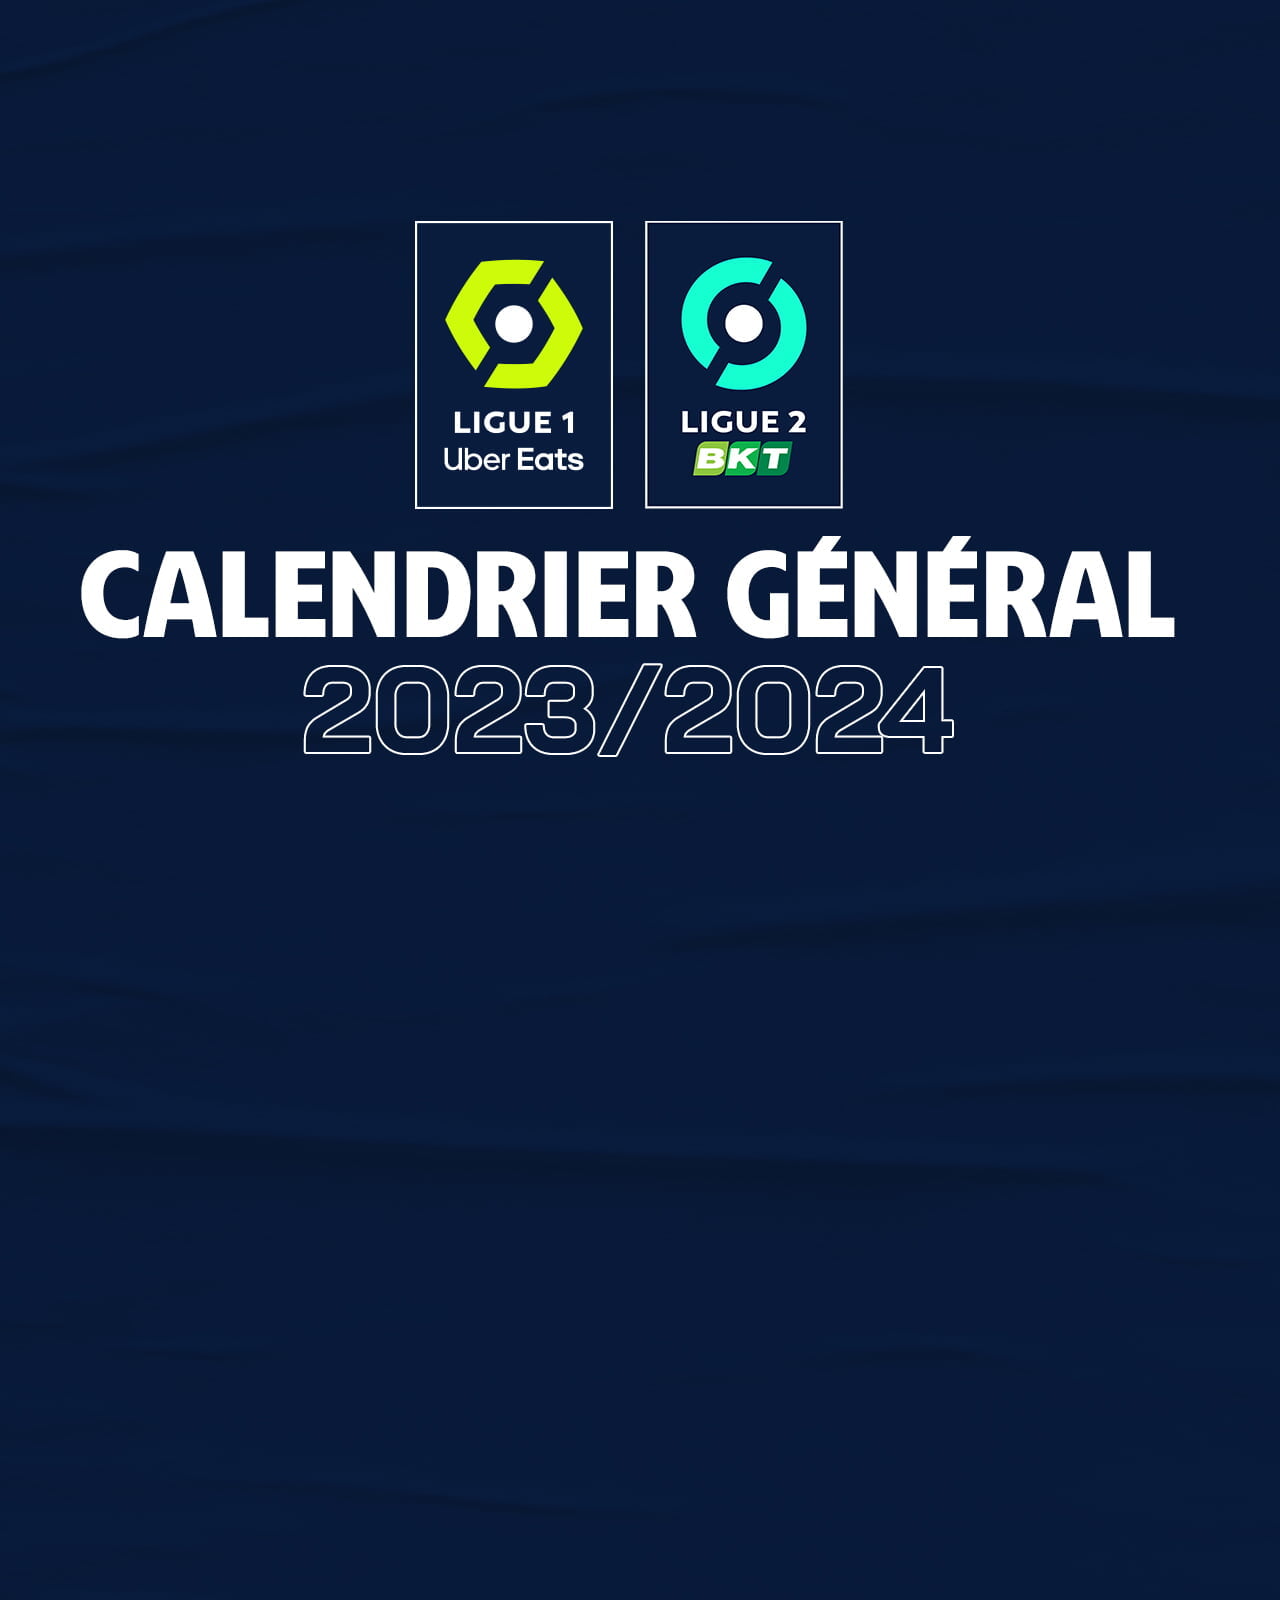 2023/2024 Bundesliga Fixtures Released